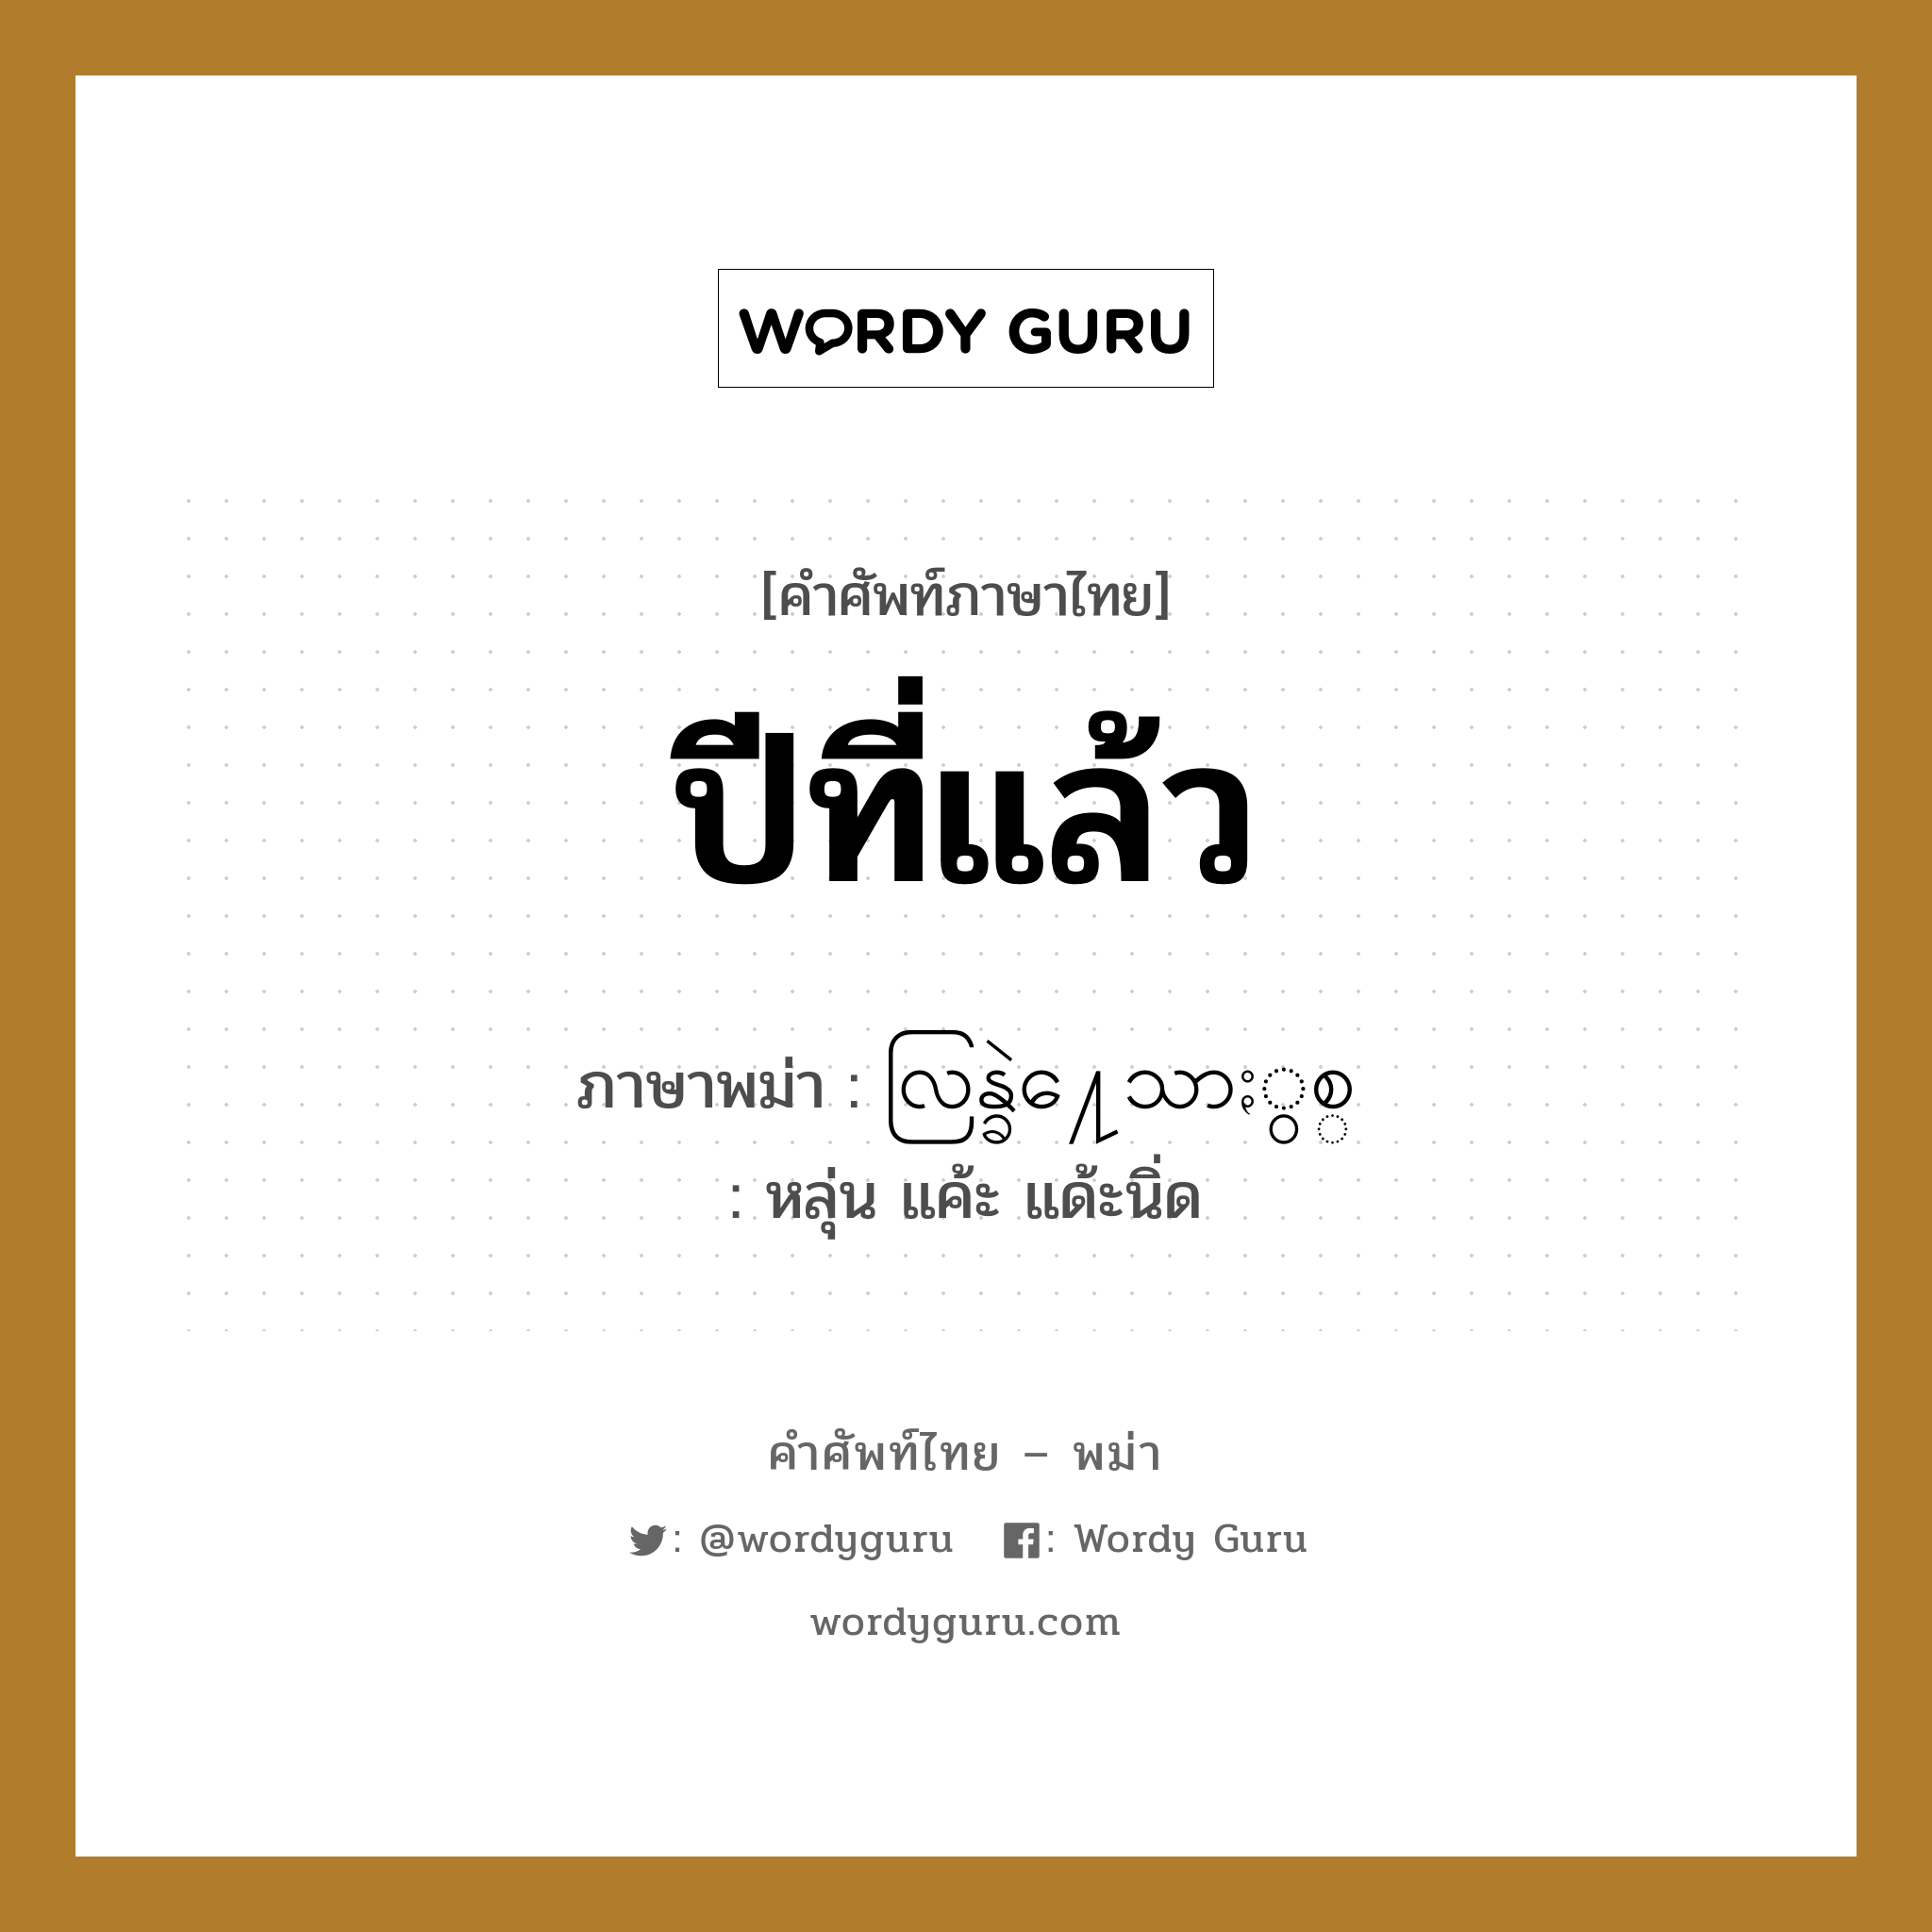 ปีที่แล้ว ภาษาพม่าคืออะไร, คำศัพท์ภาษาไทย - พม่า ปีที่แล้ว ภาษาพม่า လြန္ခဲ႔ေသာႏွစ္ หมวด หมวดวัน เดือน ปี หลุ่น แค้ะ แด้ะนิ่ด หมวด หมวดวัน เดือน ปี